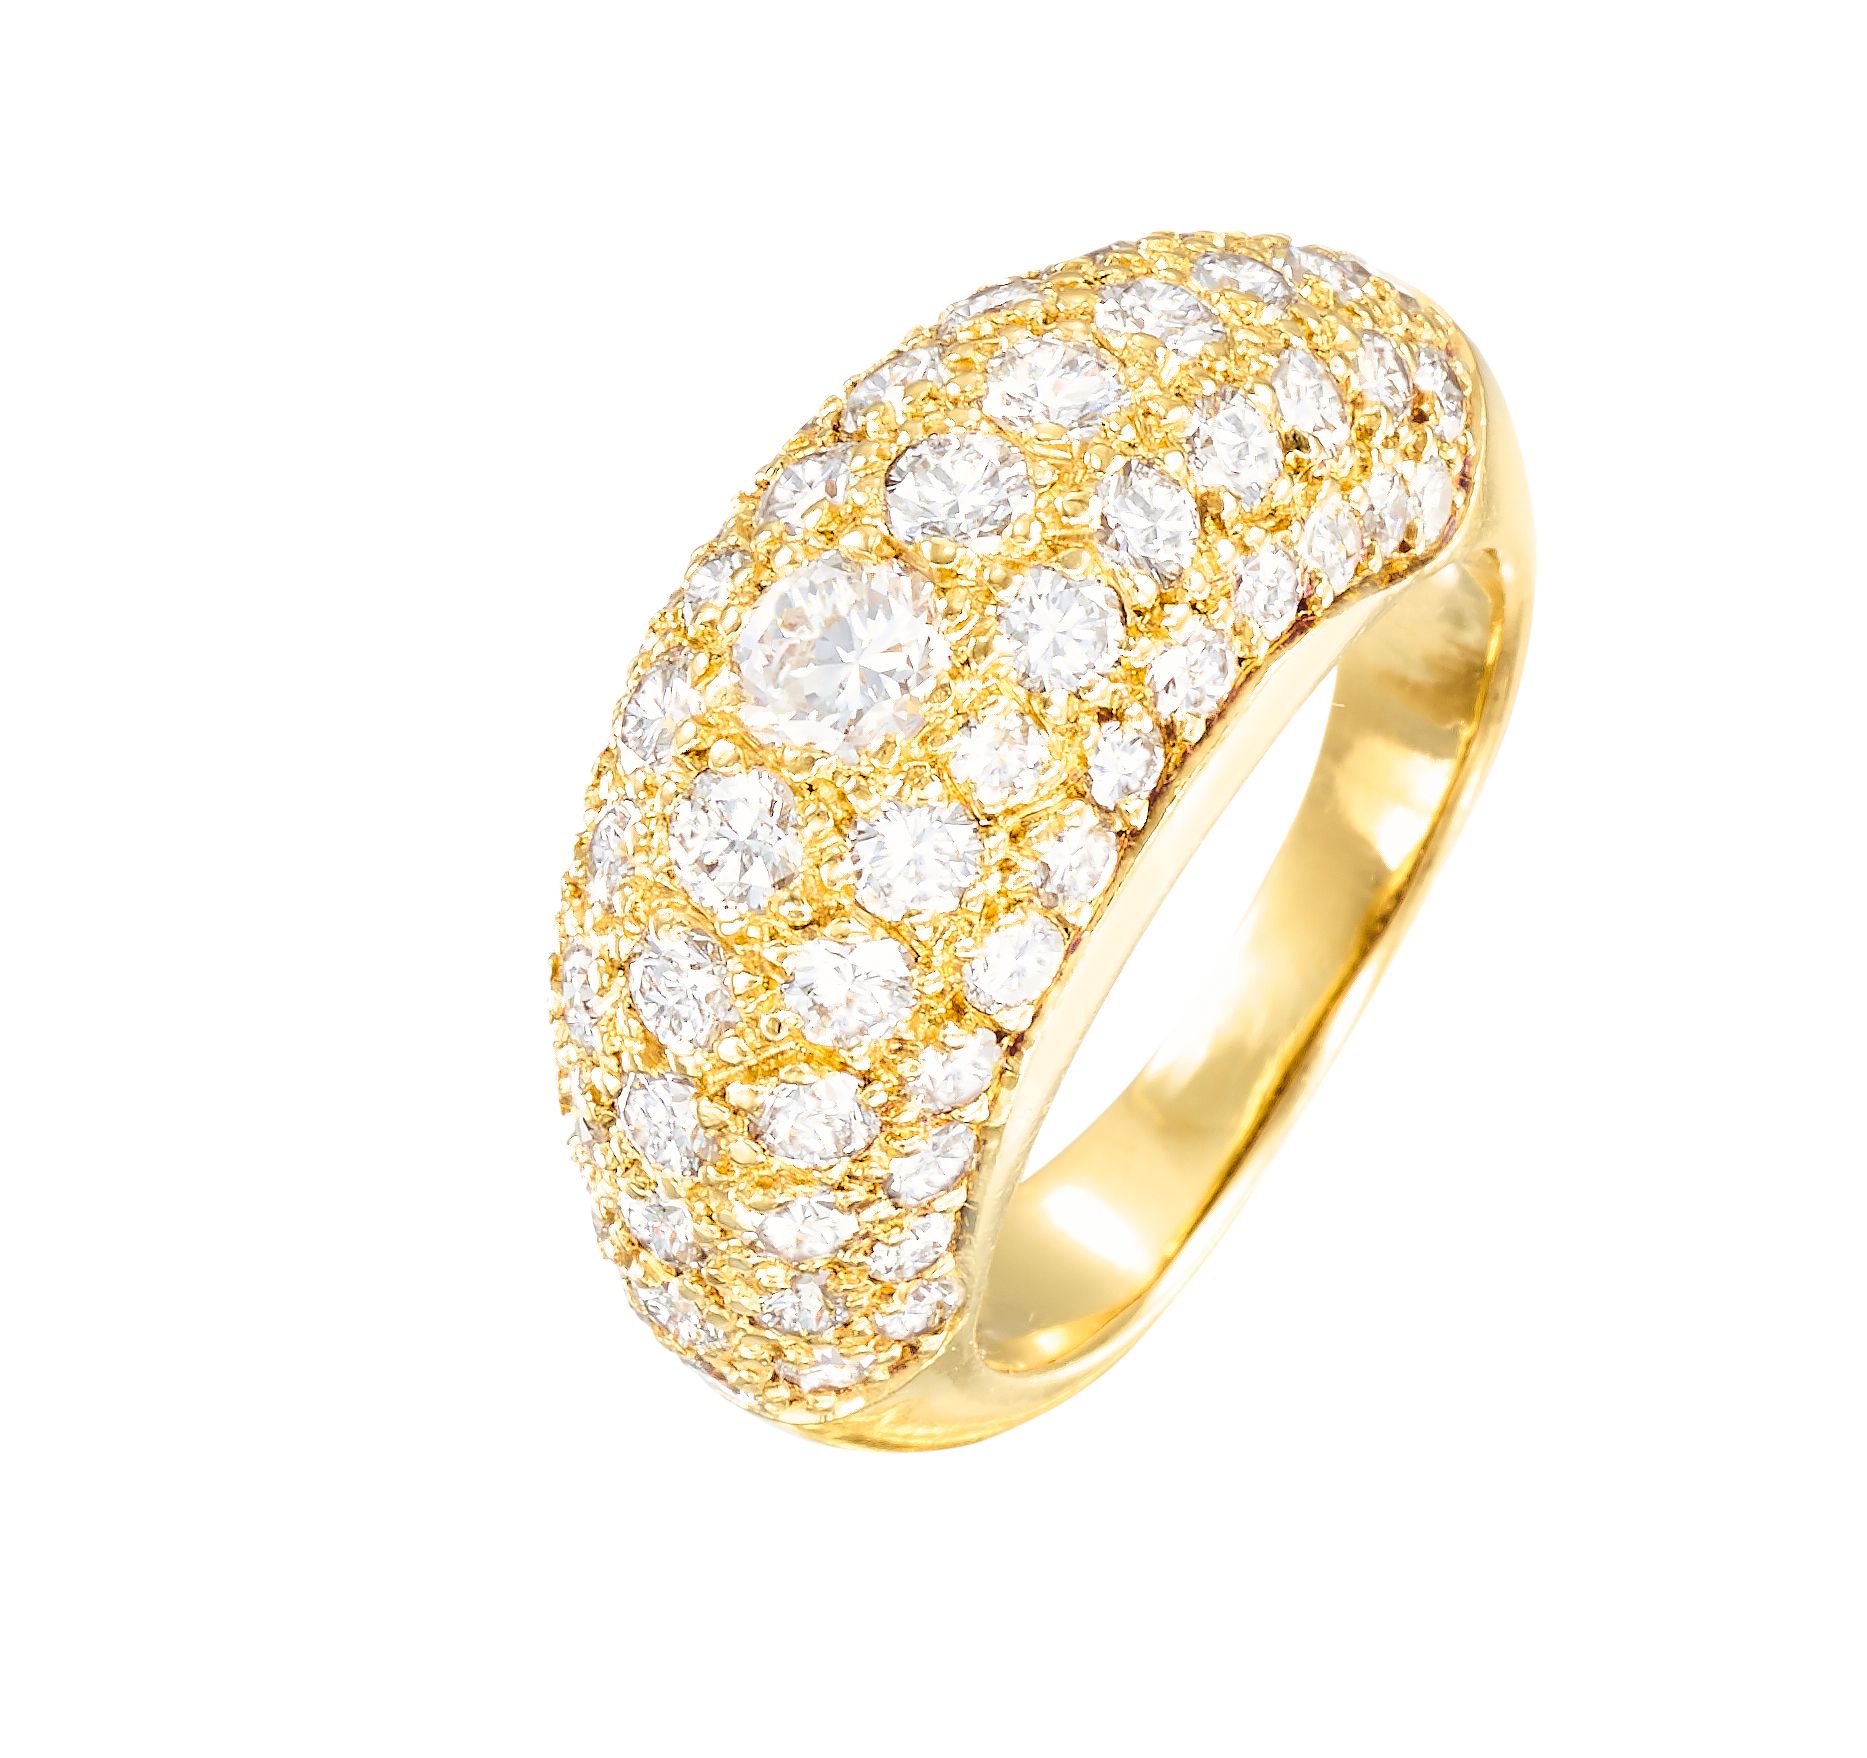 Bague type jonc en or jaune pavée d'env. 2 carats de diamants taille brillant
TD&hellip;